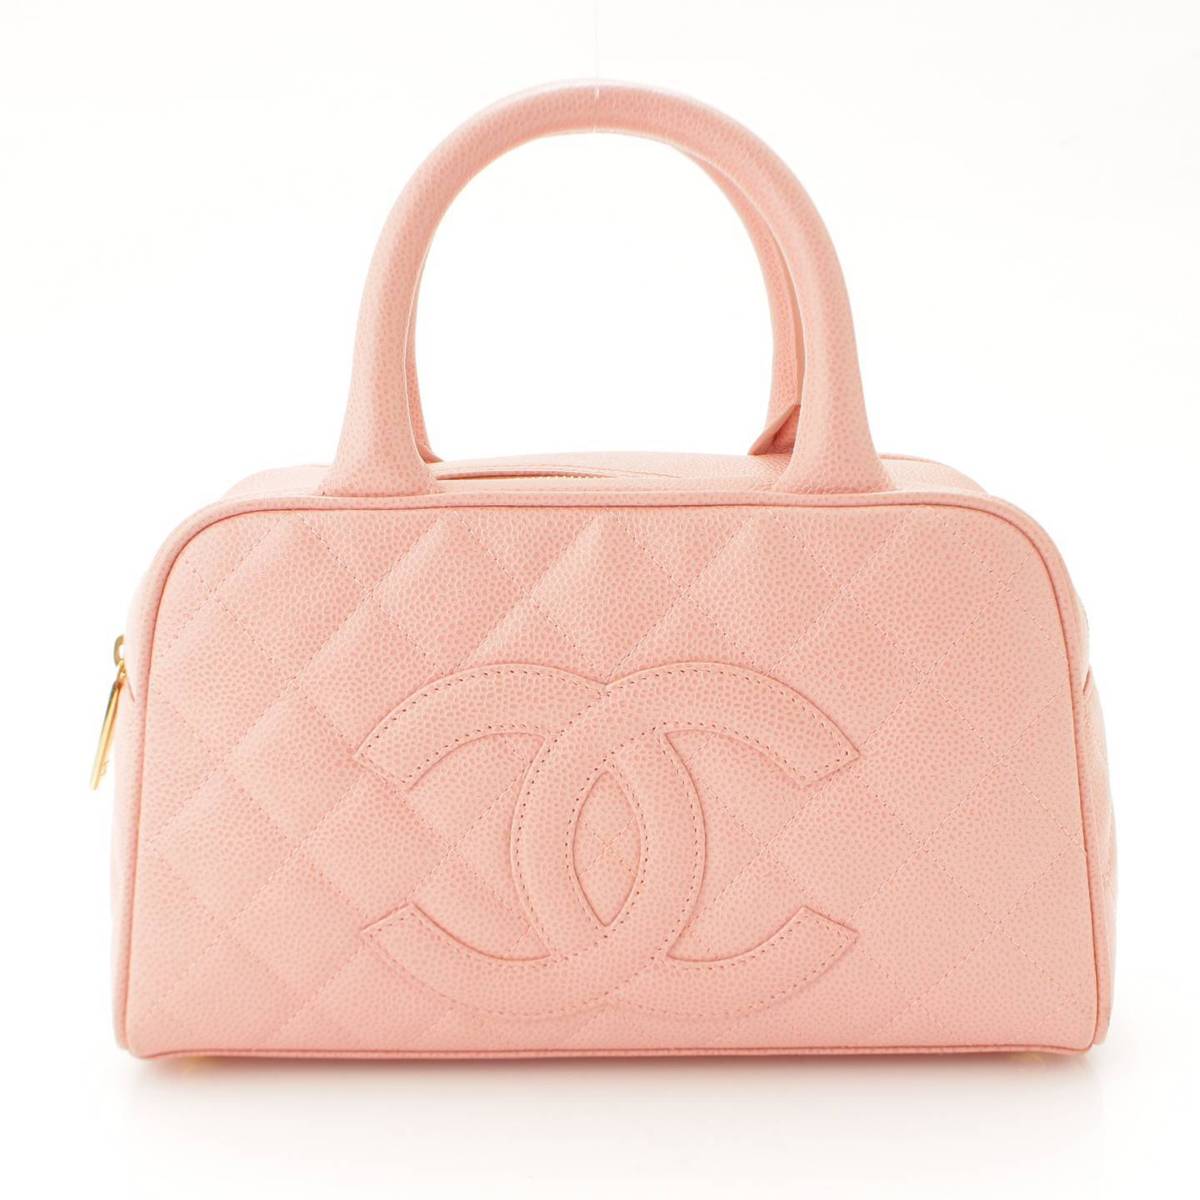 シャネル(Chanel) キャビアスキン マトラッセ ミニボストンバッグ A20996 ピンク 8番台